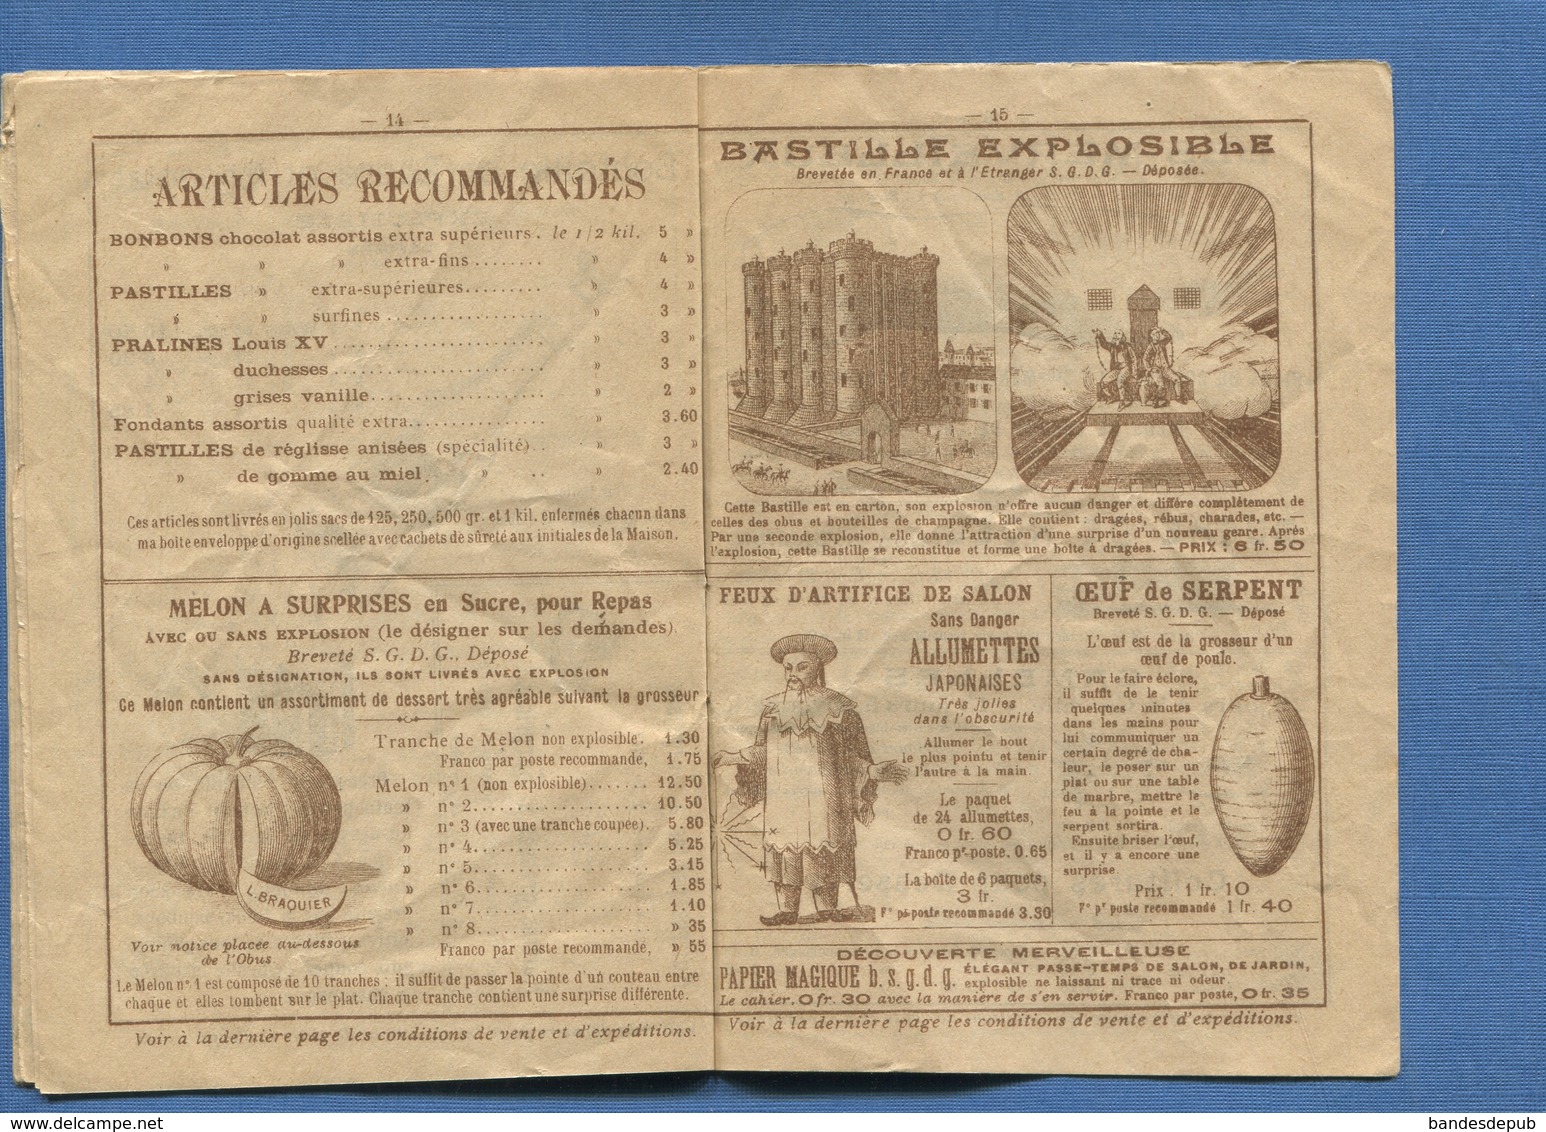 VERDUN MEUSE DRAGEES BRAQUIER CATALOGUE illustré Loubet 1900 obus pieds cochon st Menehould melon sucre château Coulmier